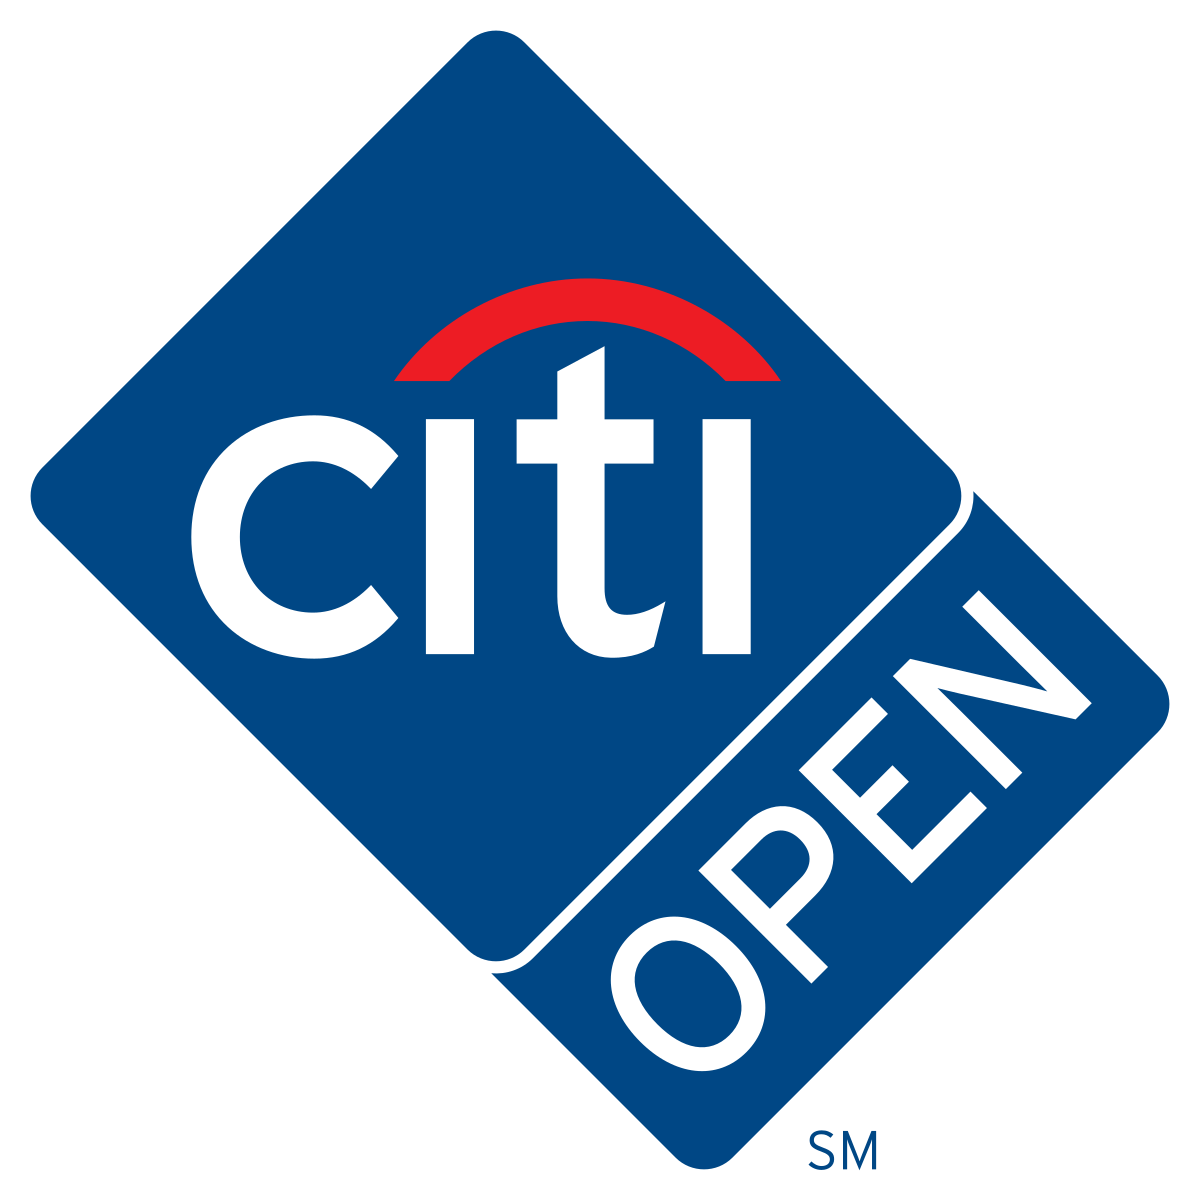 Citi open logo.svg